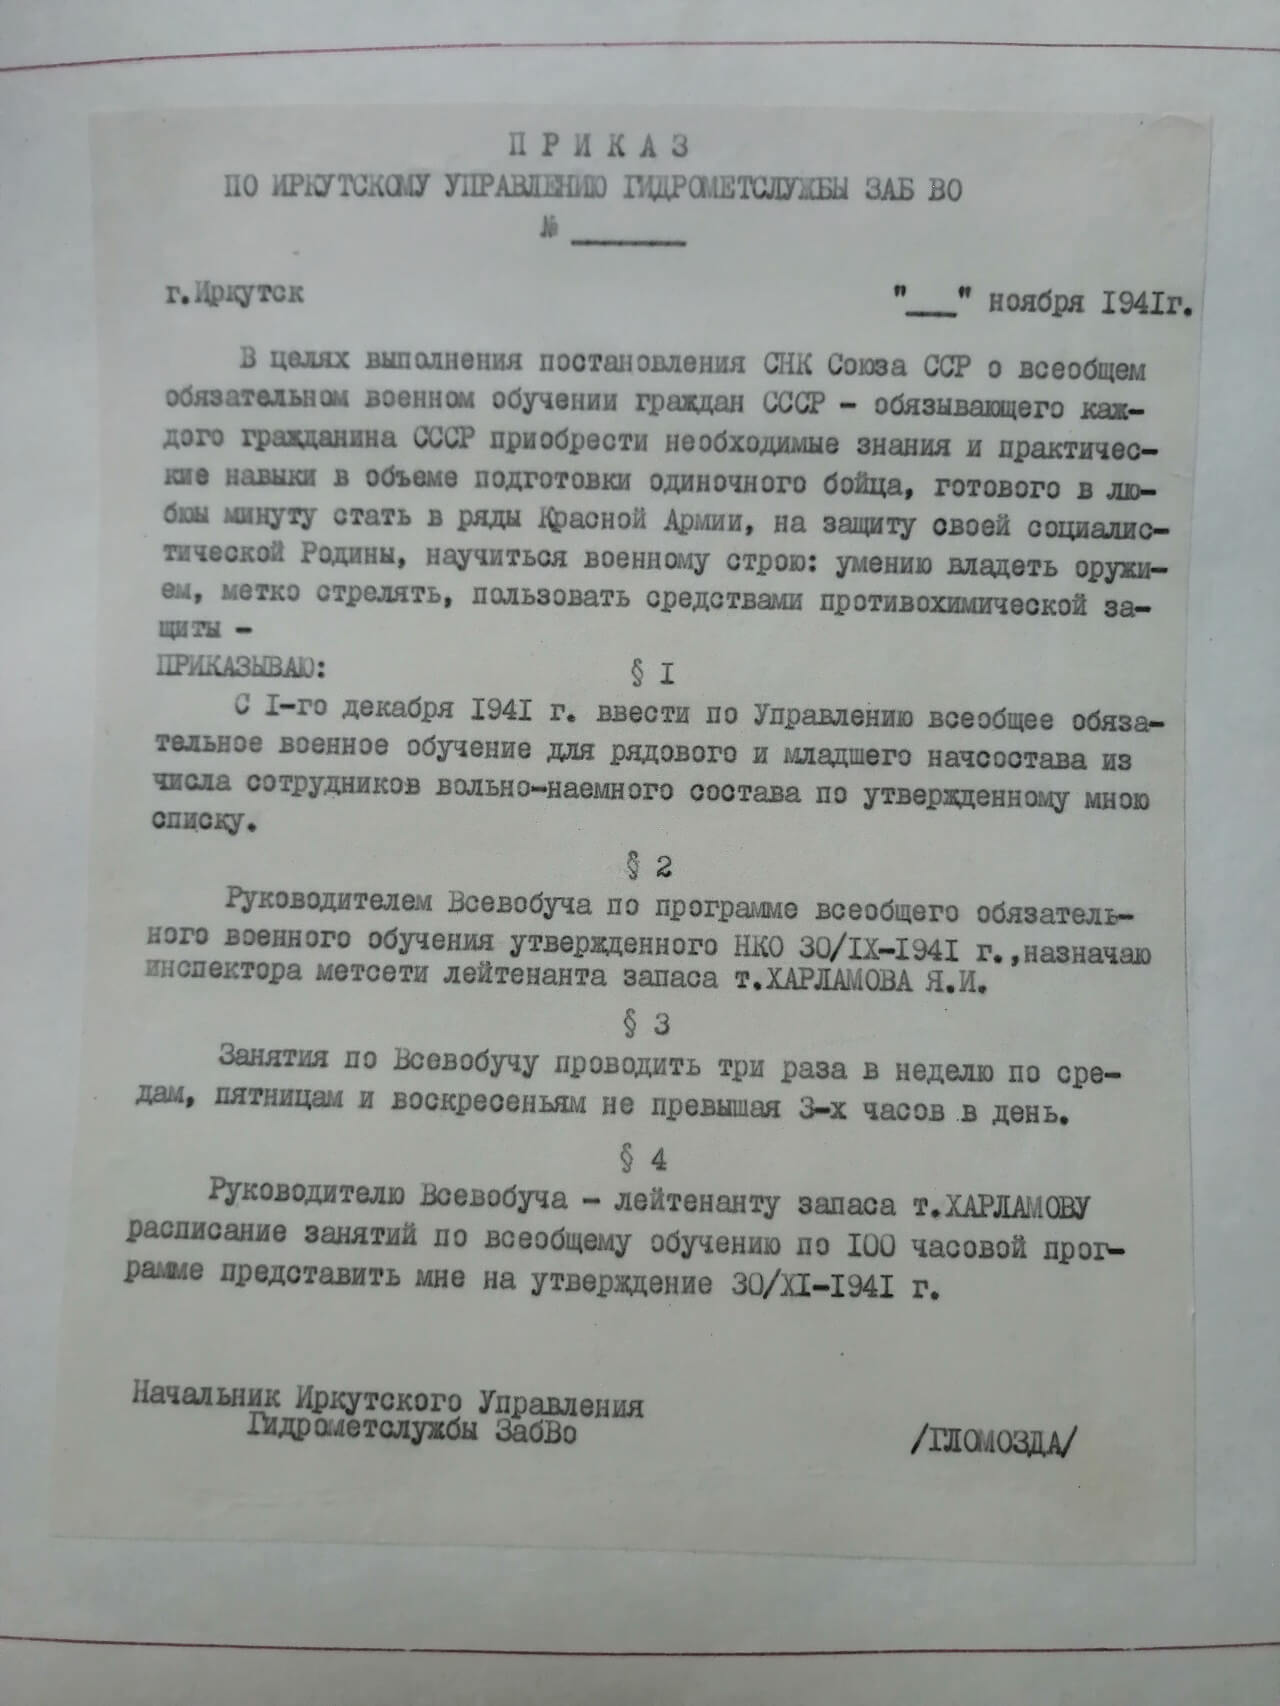 Приказ по Иркутскому управлению от ноября 1941 г.